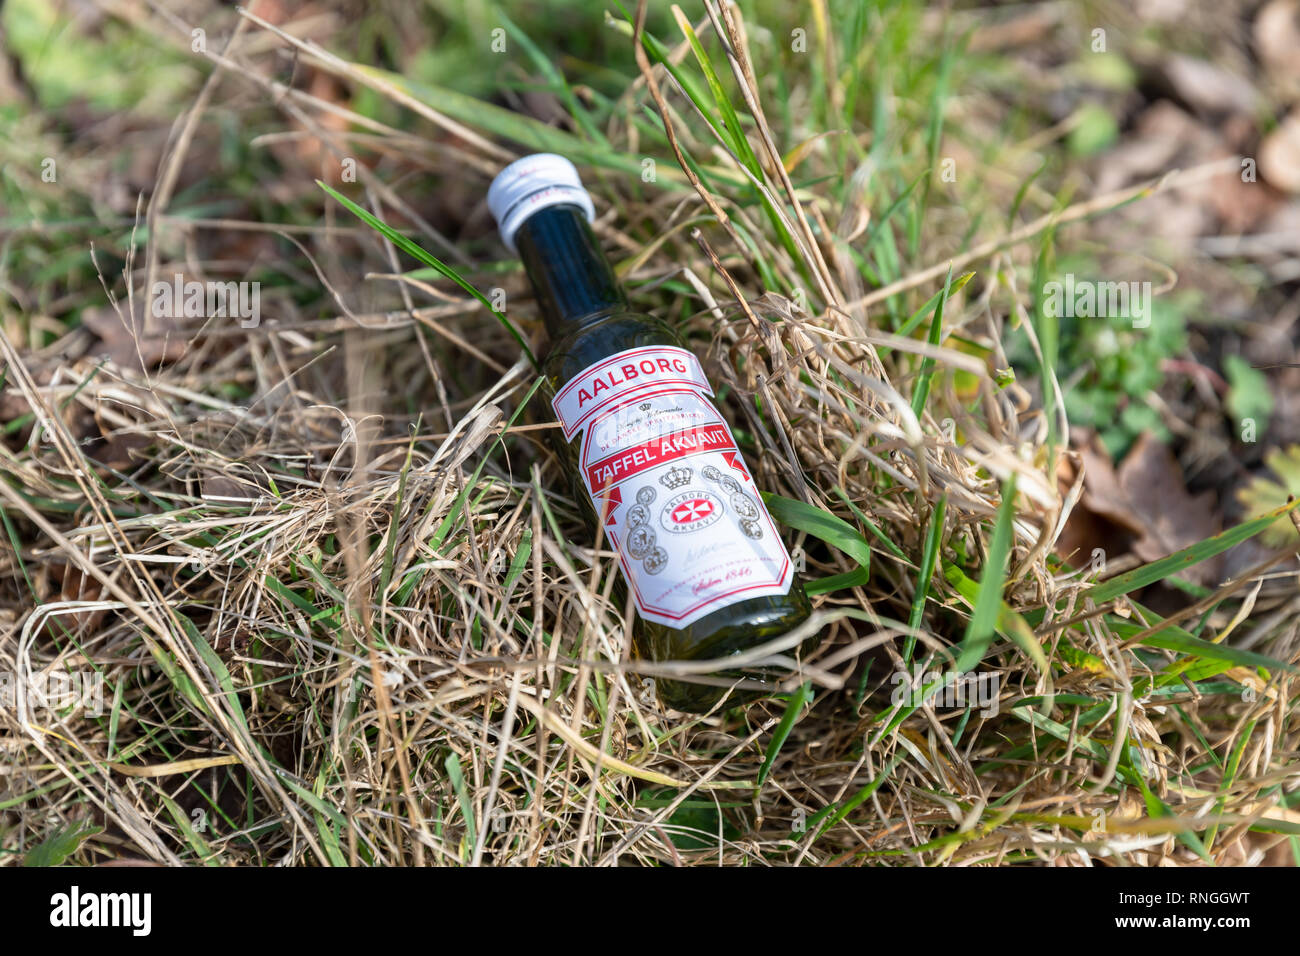 Rød Aalborg ('Red Aalborg'), Taffel Akvavit, petite bouteille d'aquavit jetée dans l'herbe au bord de la route ; Danemark Banque D'Images